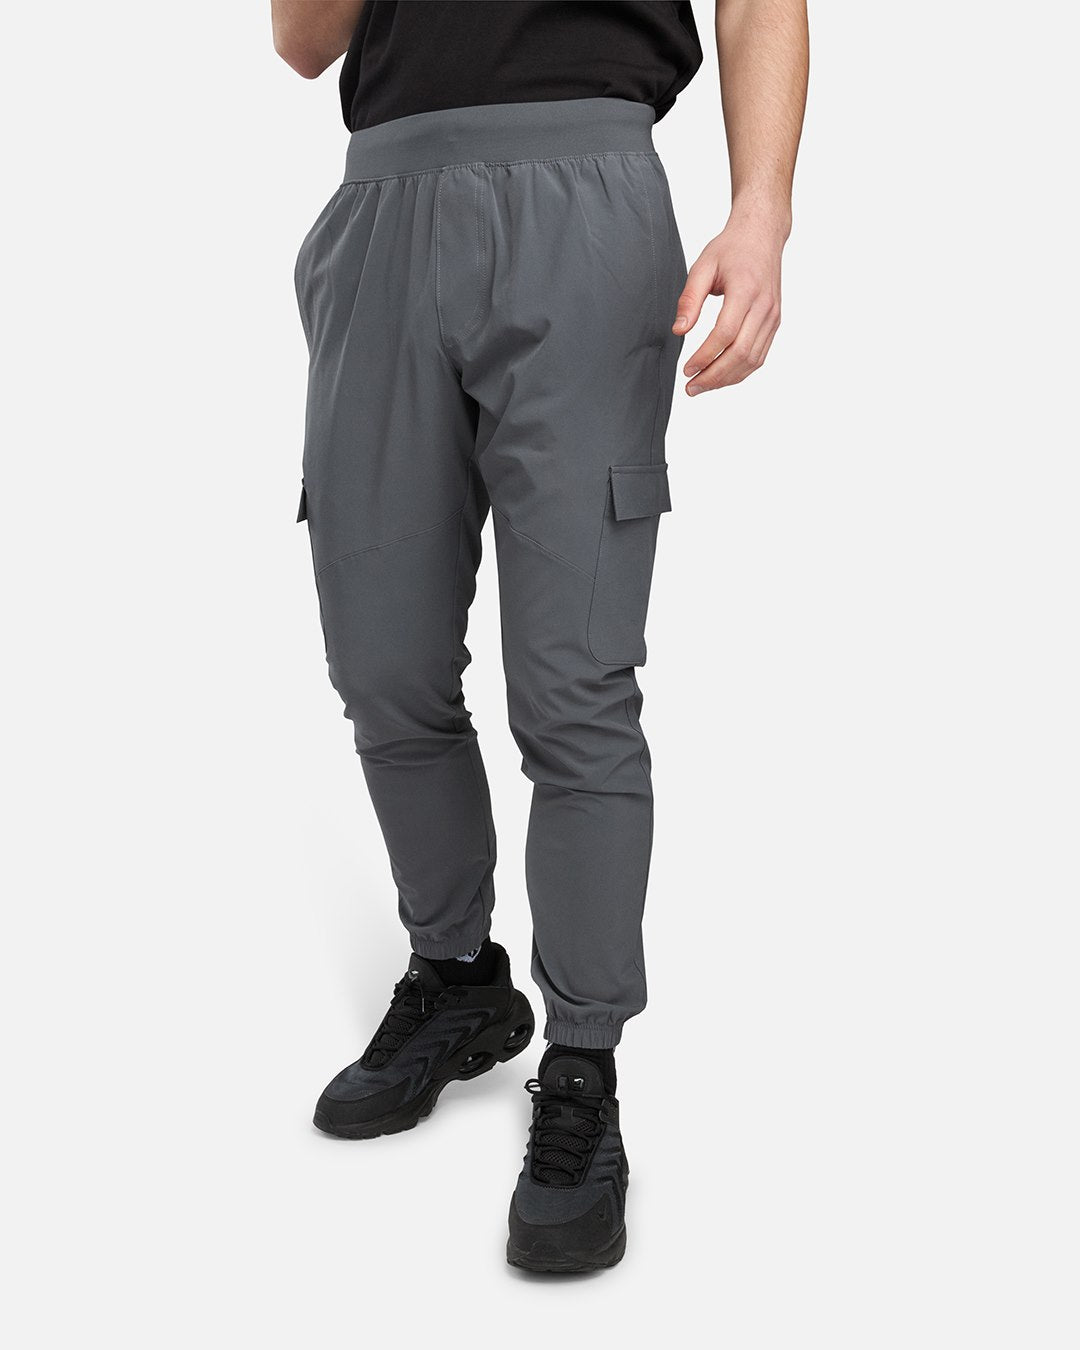 Pantaloni in tessuto elasticizzato Under Armour - Grigio/Nero